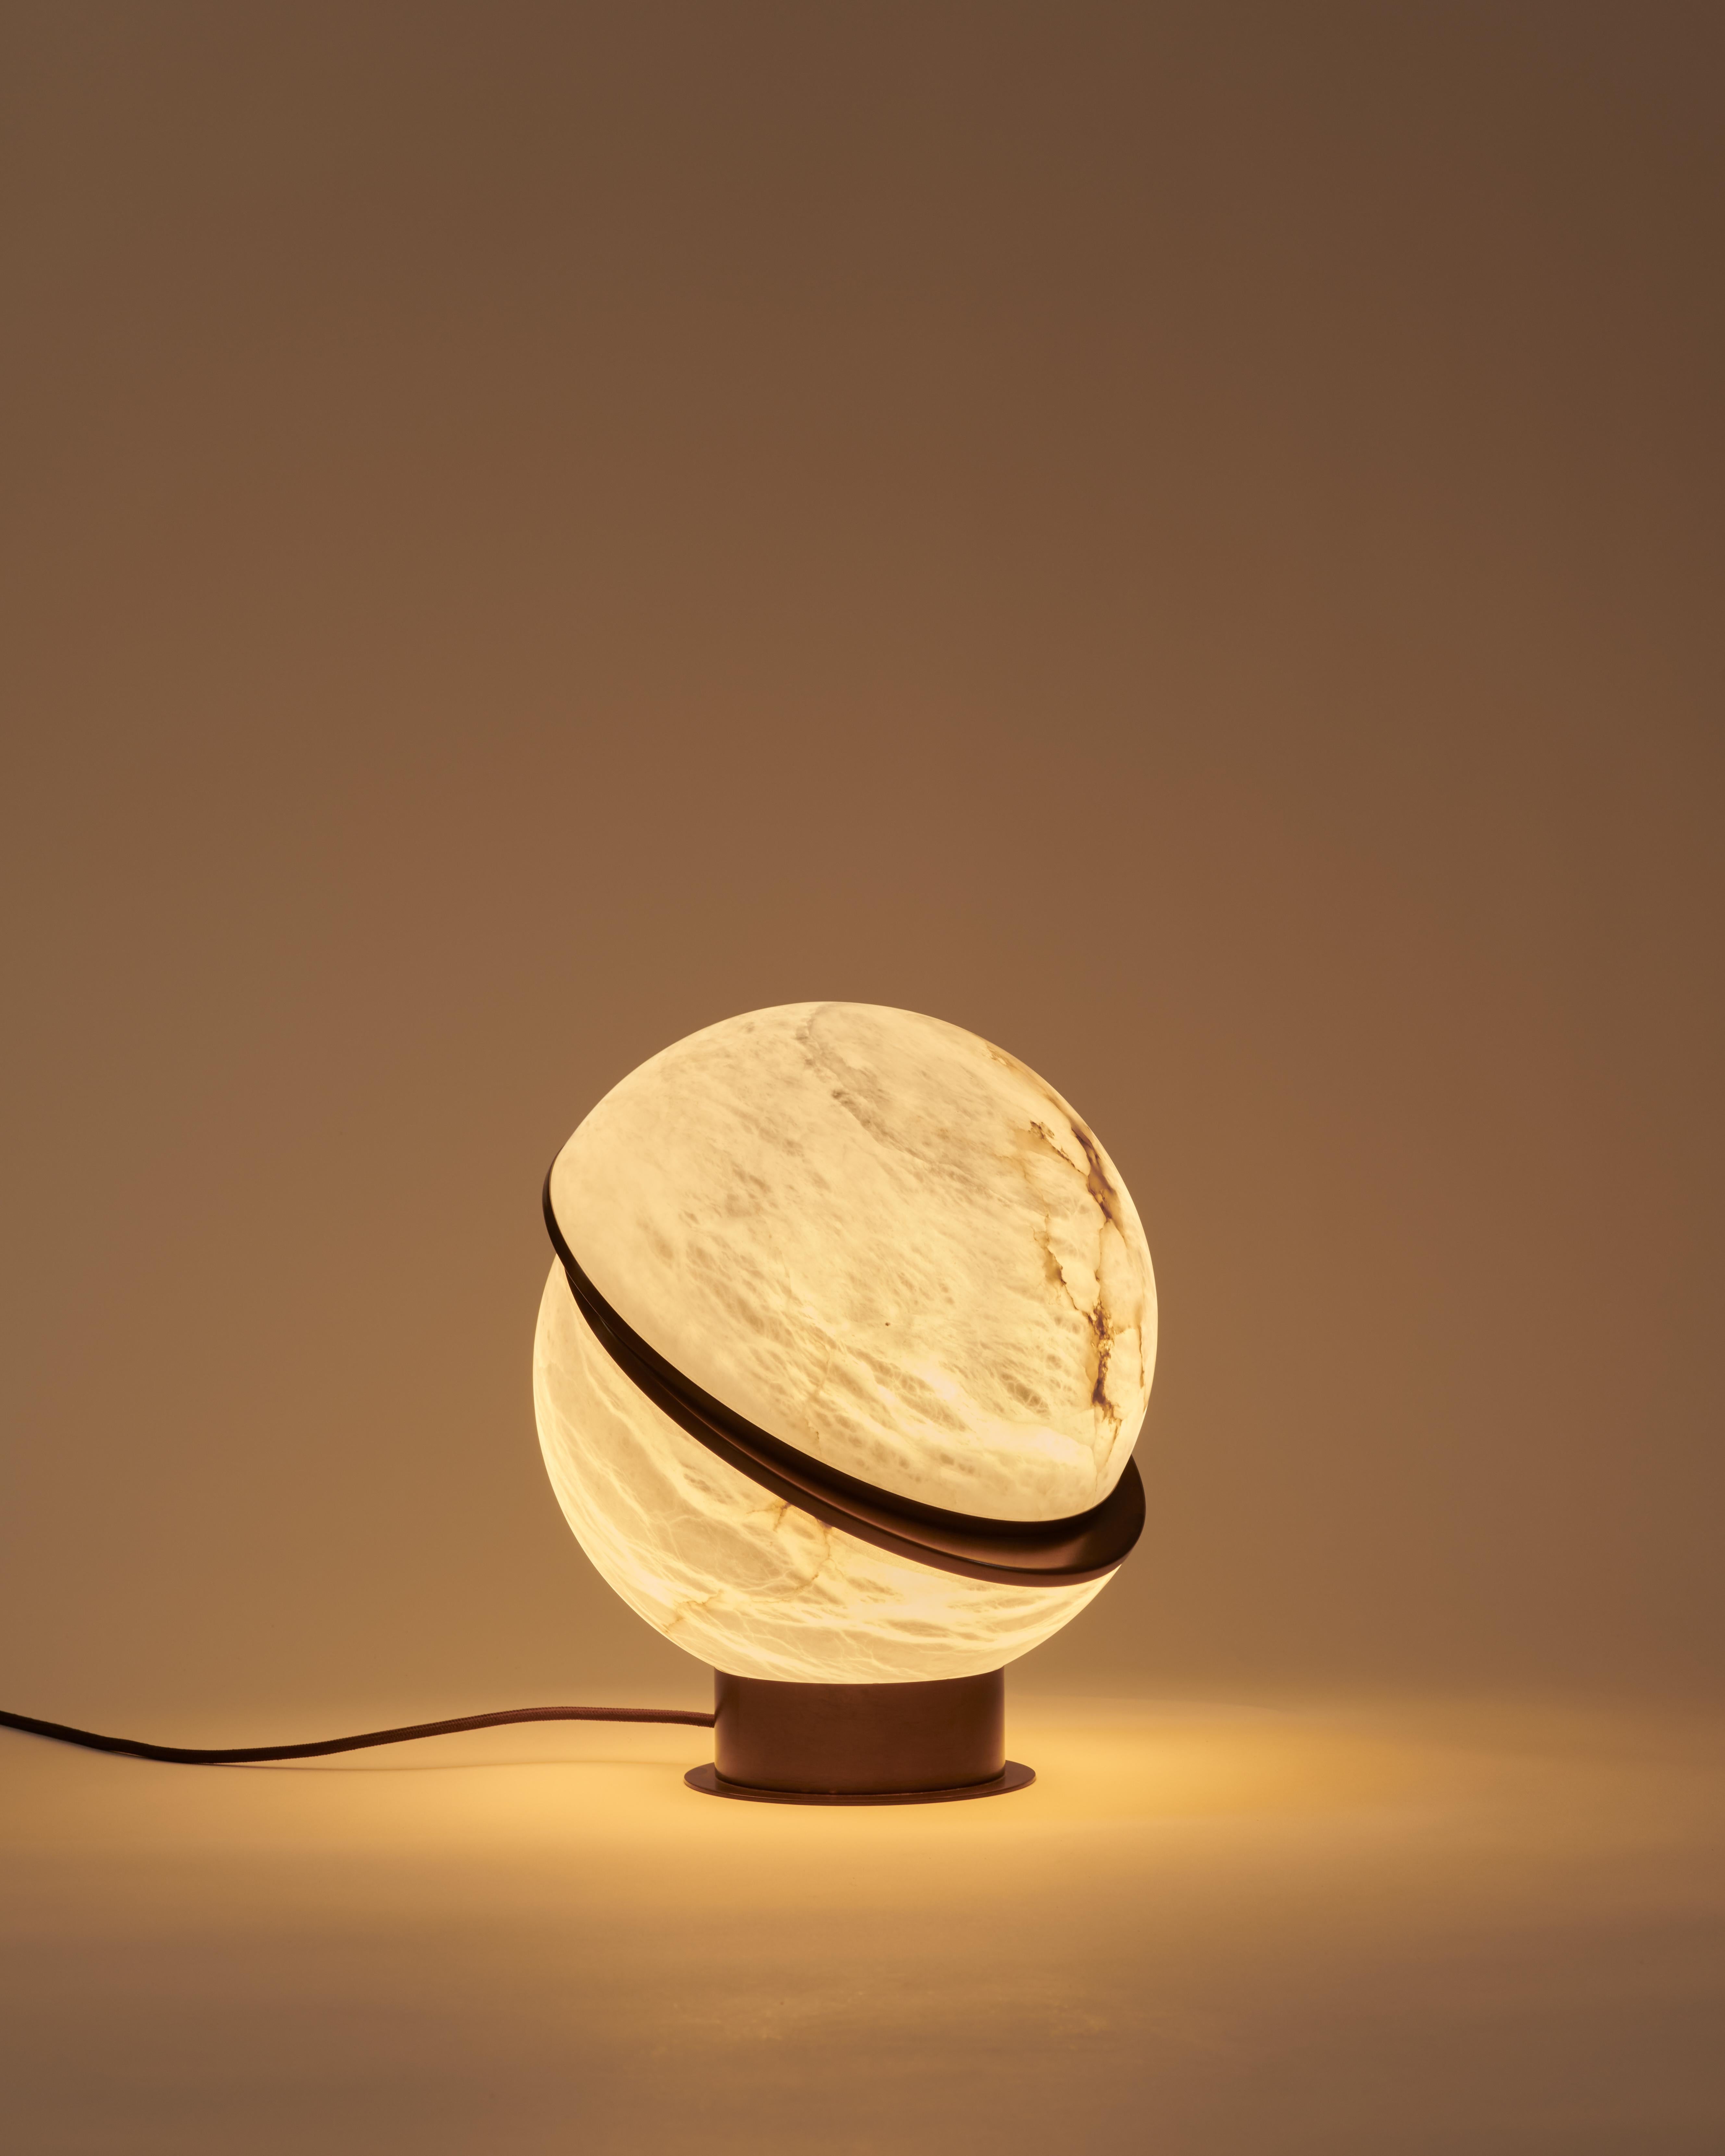 La lampe à poser Alabaster Globe est une pièce étonnante qui respire l'élégance et la sophistication. La lampe présente deux demi-sphères d'albâtre rétroéclairées, maintenues ensemble par un fin contour en laiton. La magie des veines de l'albâtre